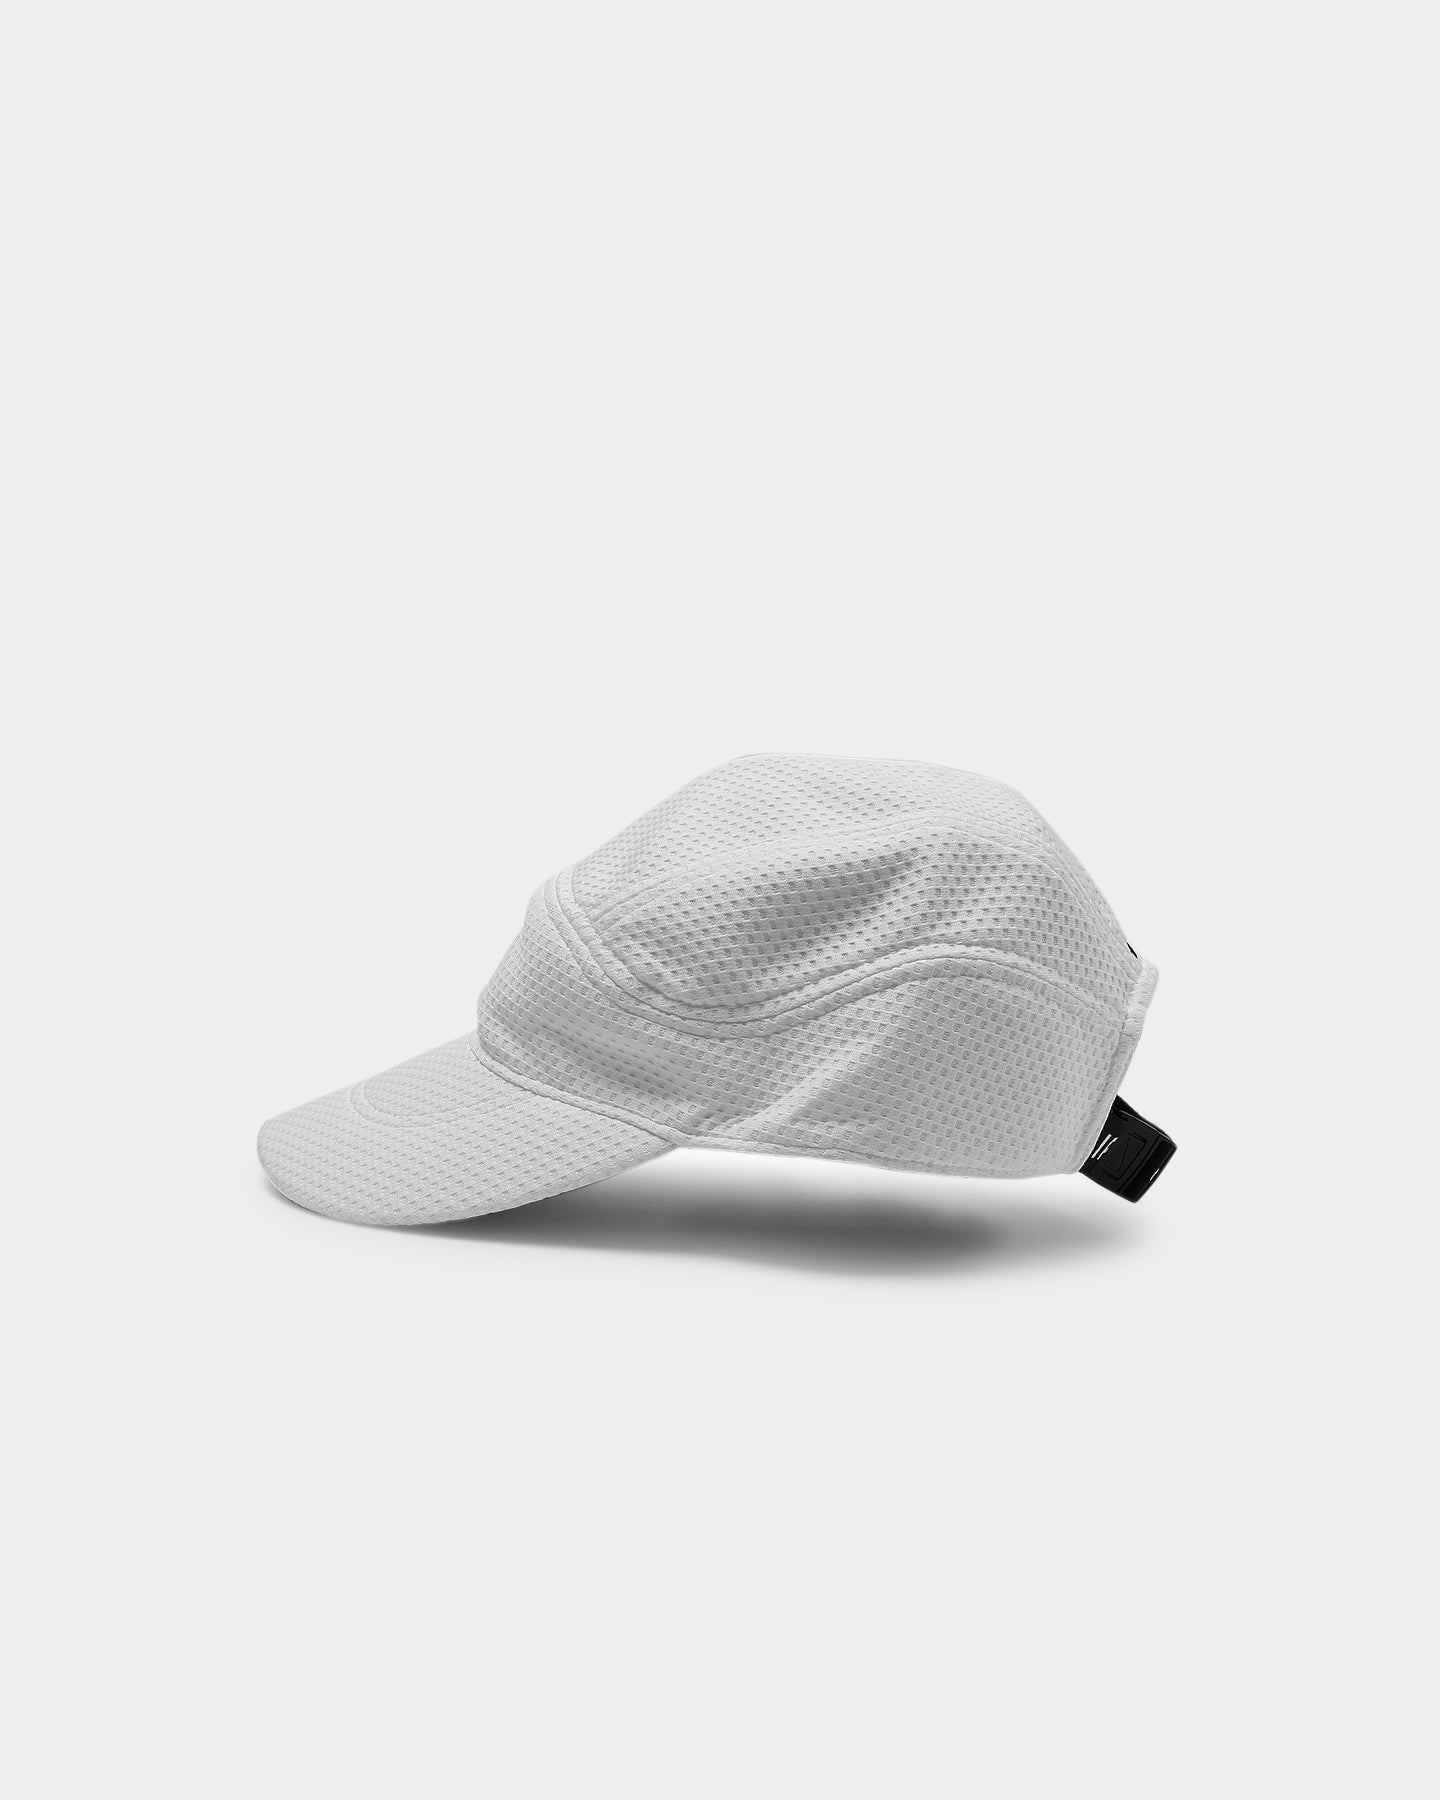 white air max hat